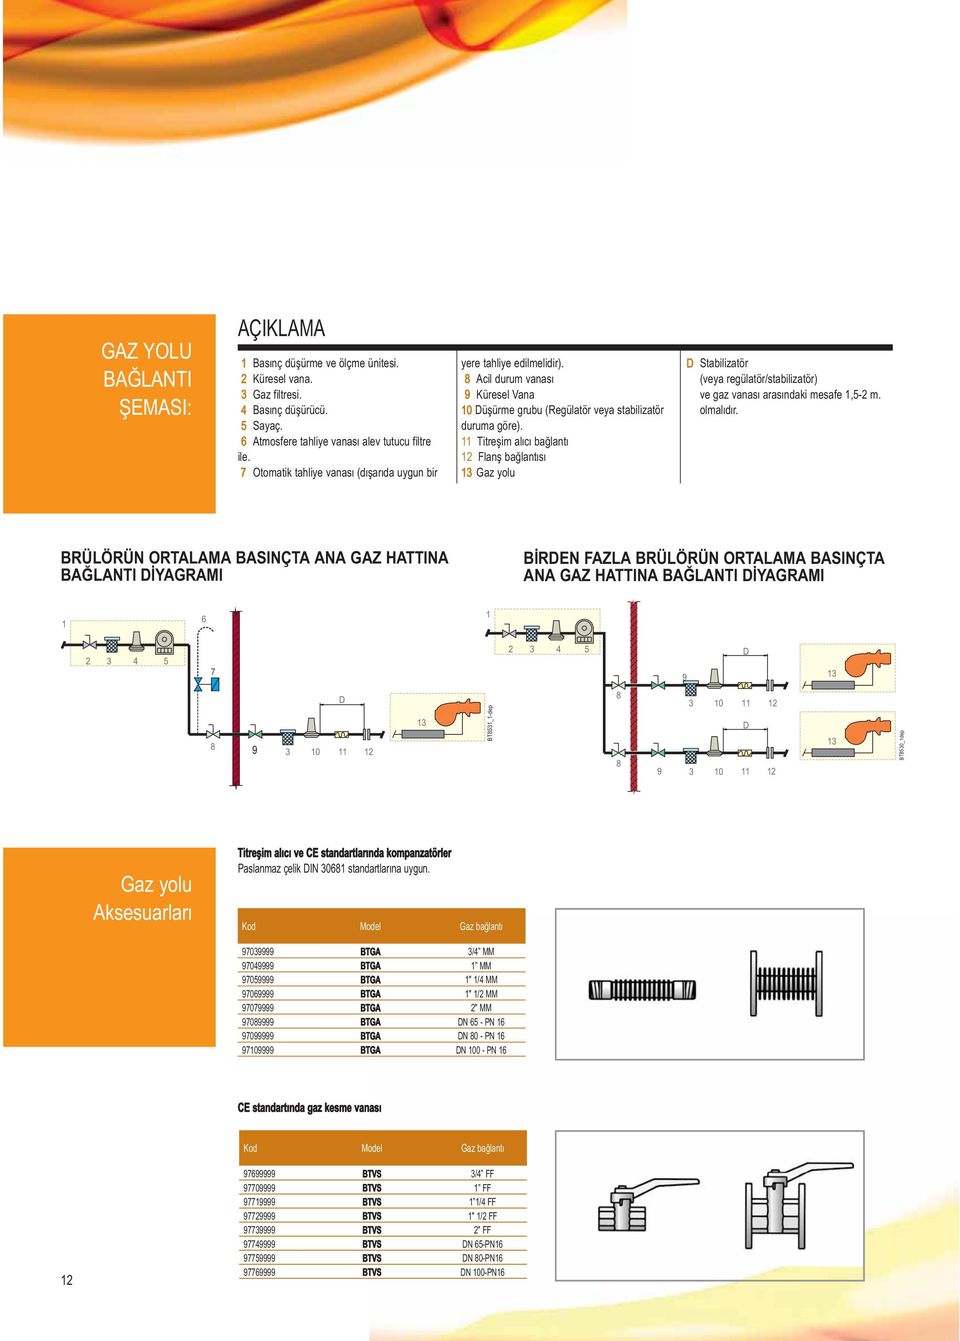 11 Titreşim alıcı bağlantı 12 Flanş bağlantısı 13 Gaz yolu D Stabilizatör (veya regülatör/stabilizatör) ve gaz vanası arasındaki mesafe 1,5-2 m. olmalıdır.